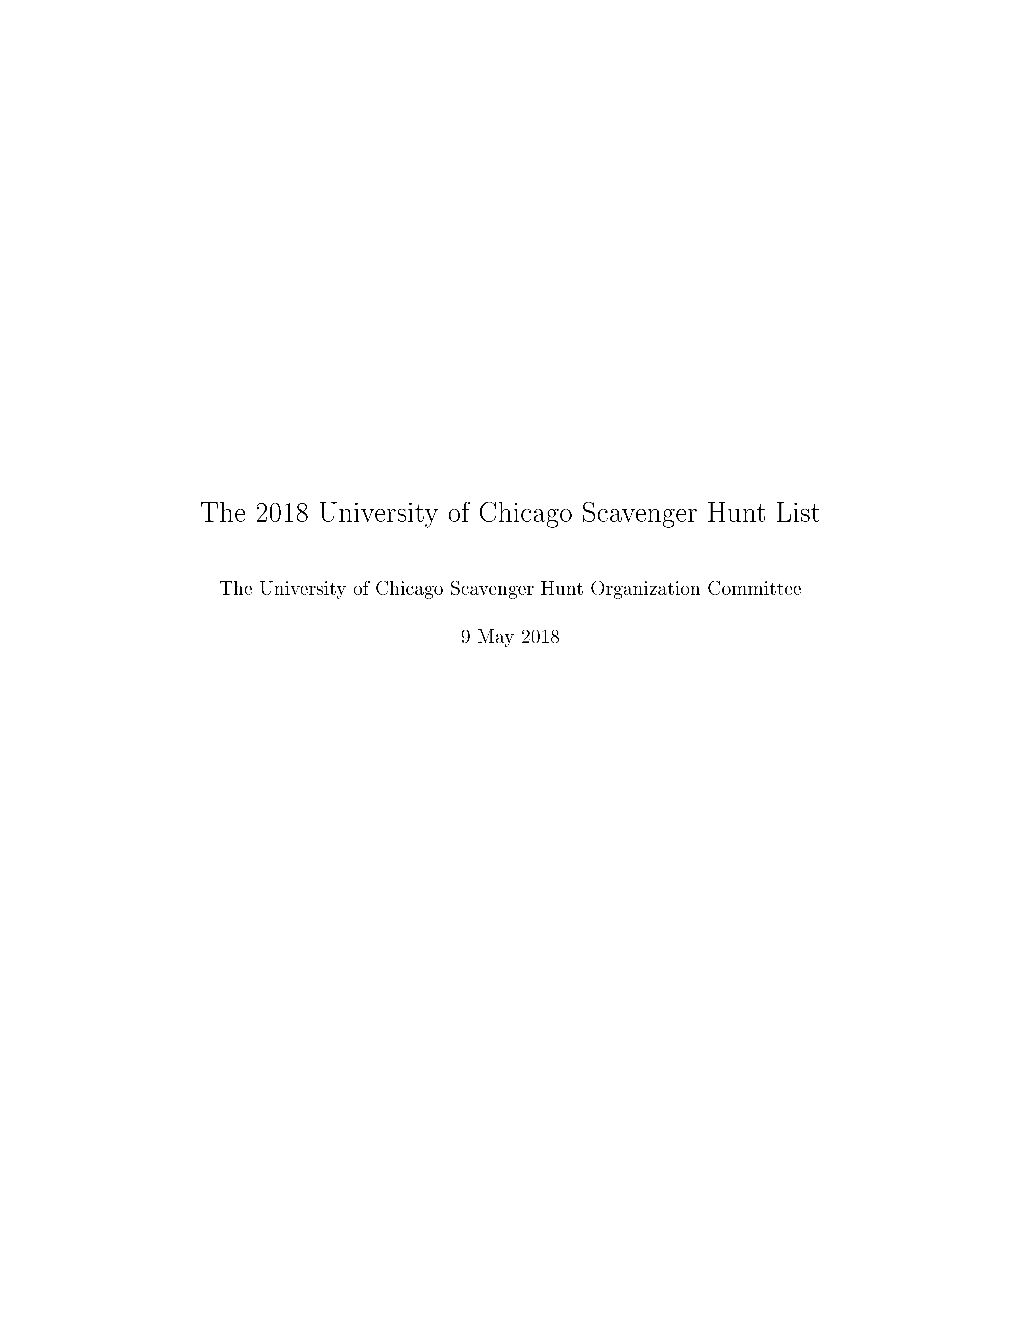 The 2018 University of Chicago Scavenger Hunt List